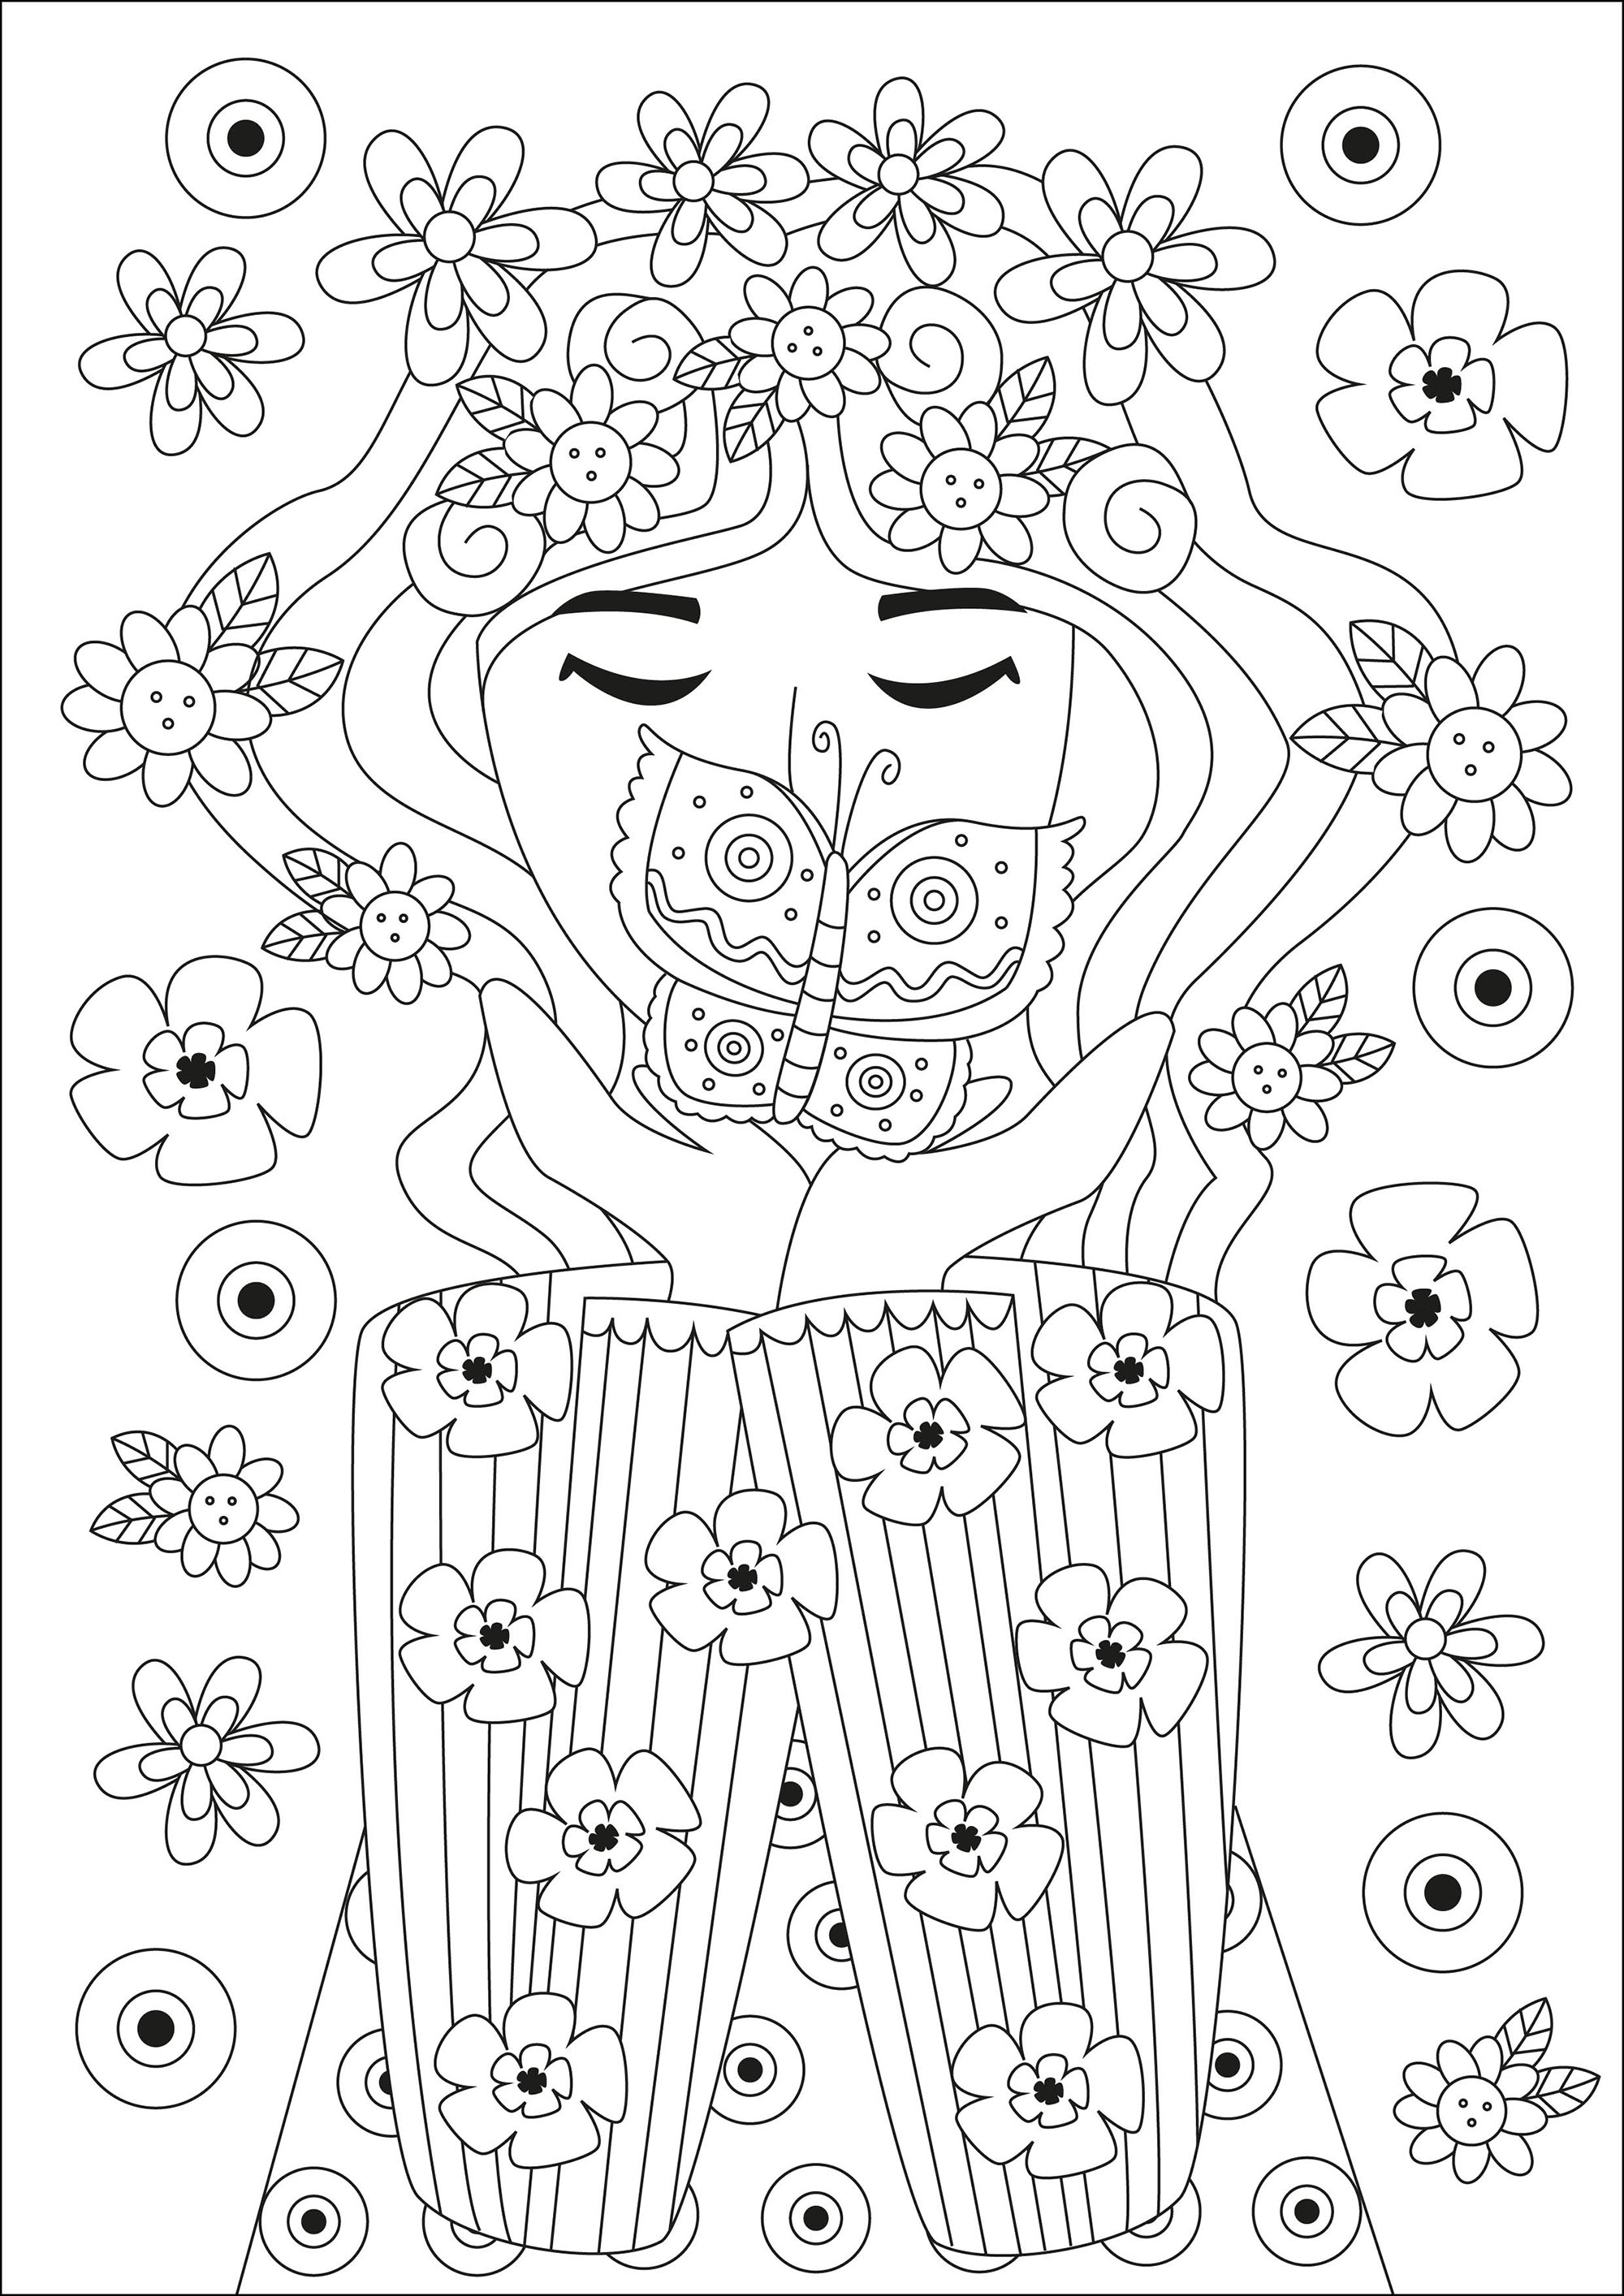 Inspirador dibujo para colorear de una mujer con una hermosa mariposa, rodeada de bonitas flores.